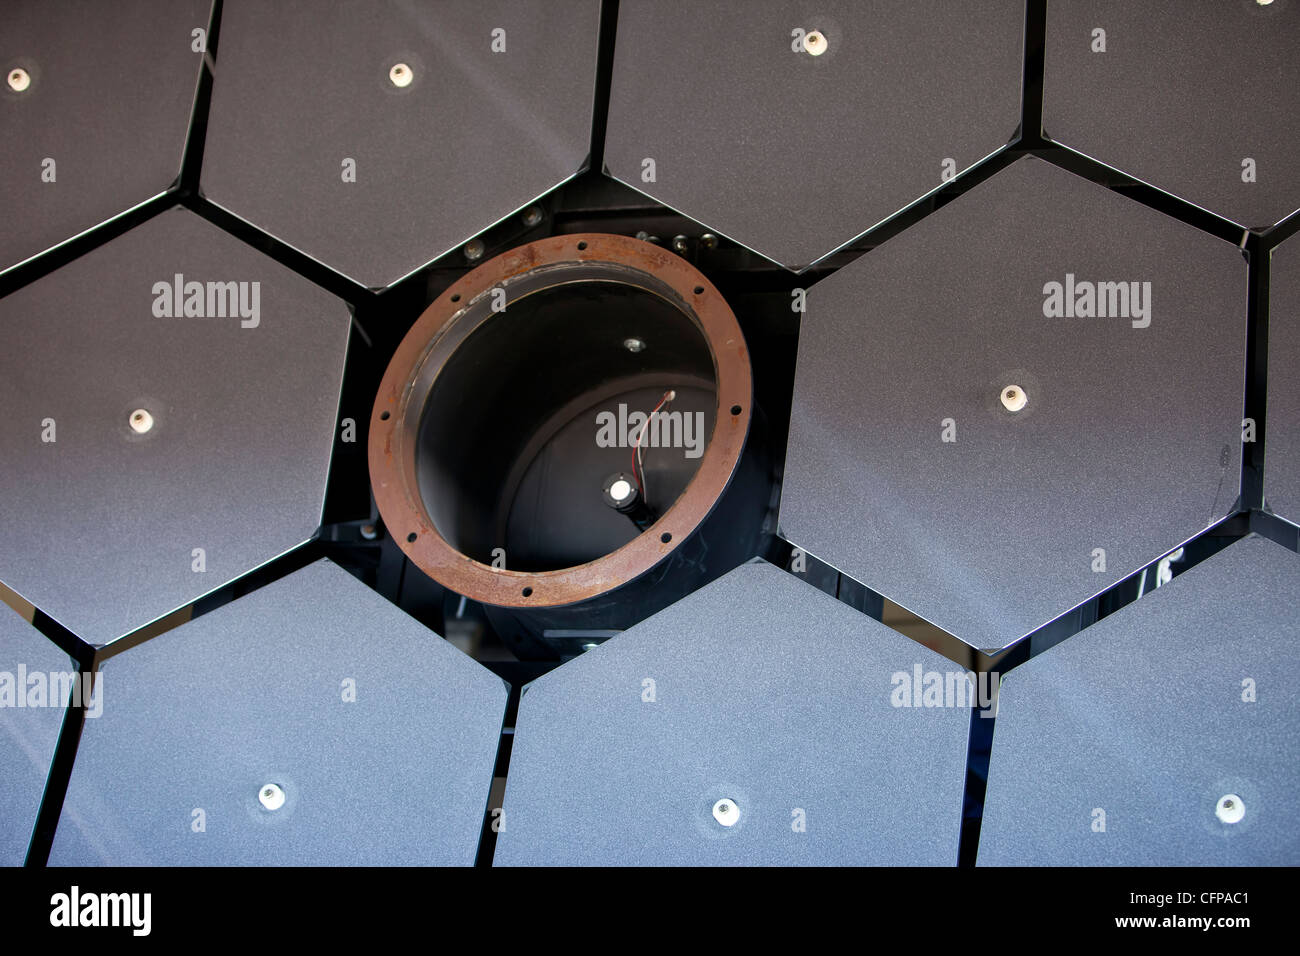 Kosmische Strahlung reflektierende Fluoreszenz-Detektoren Spiegel Array wissenschaftliches Observatorium elektronische Geräte. Stockfoto